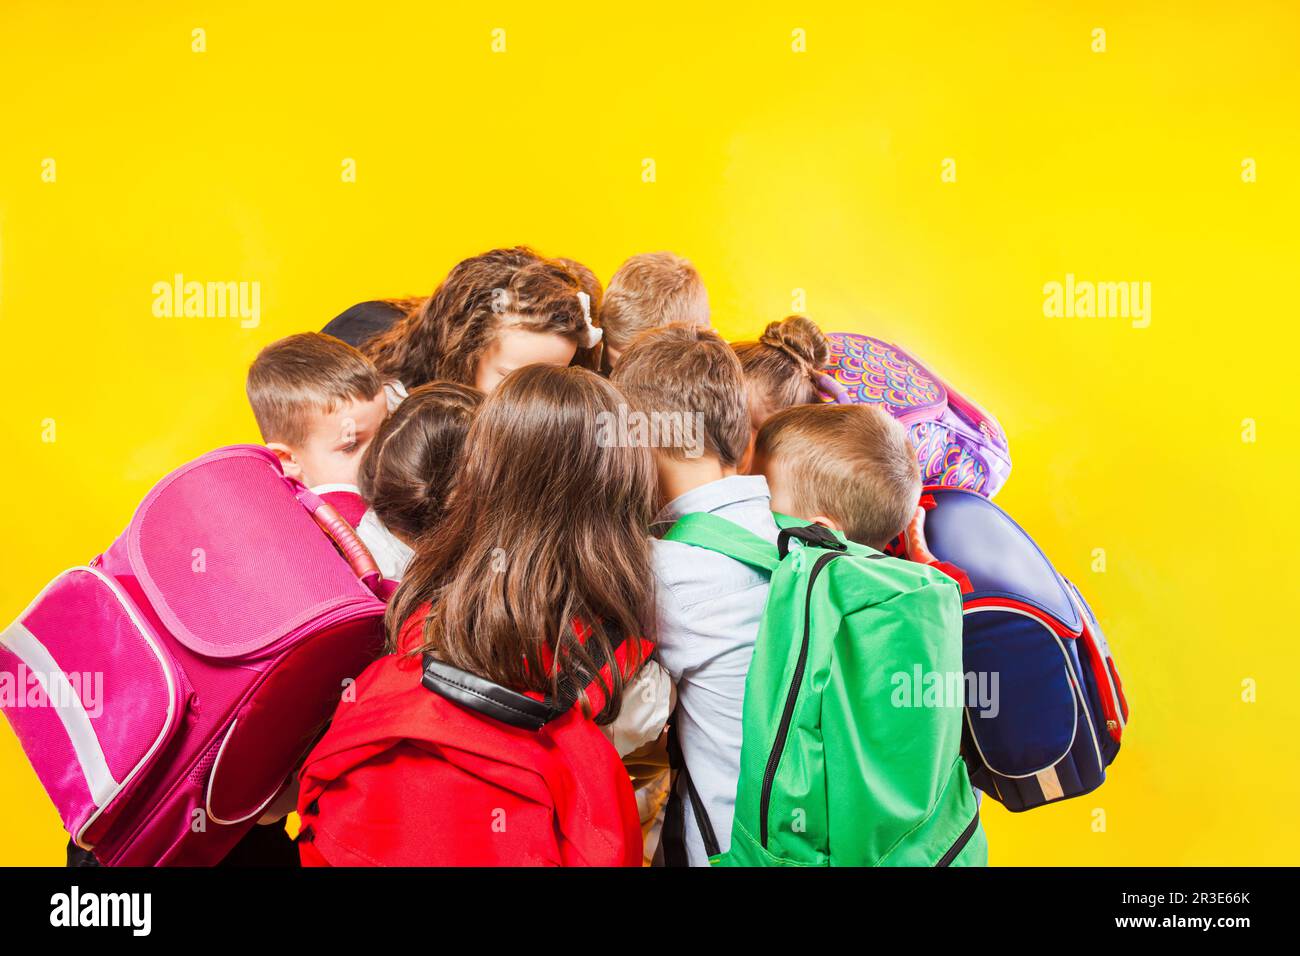 Gli scolari stanno accatastando le mani insieme sullo sfondo giallo Foto Stock